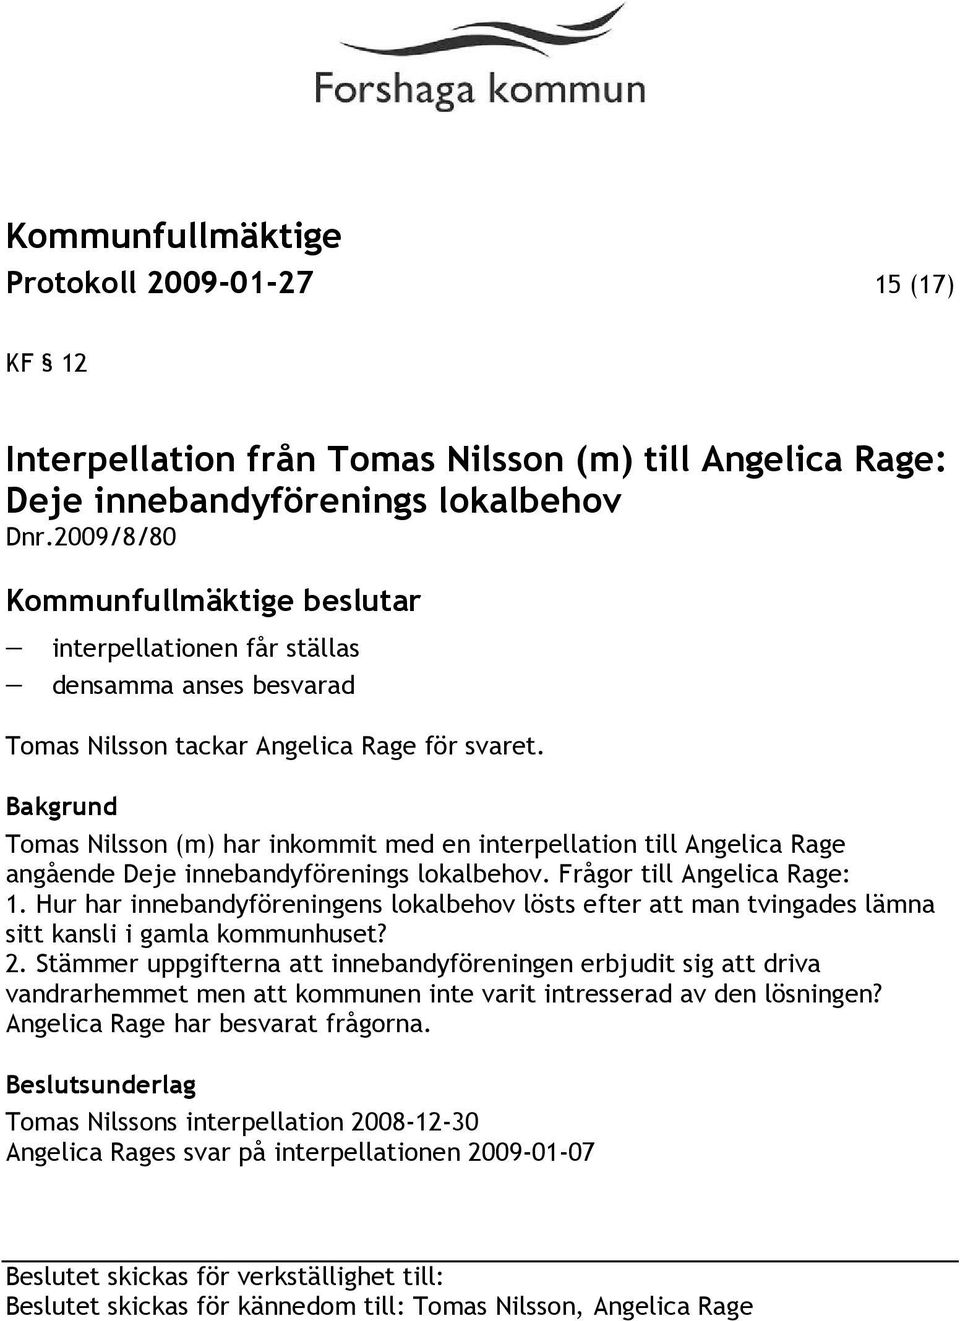 Tomas Nilsson (m) har inkommit med en interpellation till Angelica Rage angående Deje innebandyförenings lokalbehov. Frågor till Angelica Rage: 1.